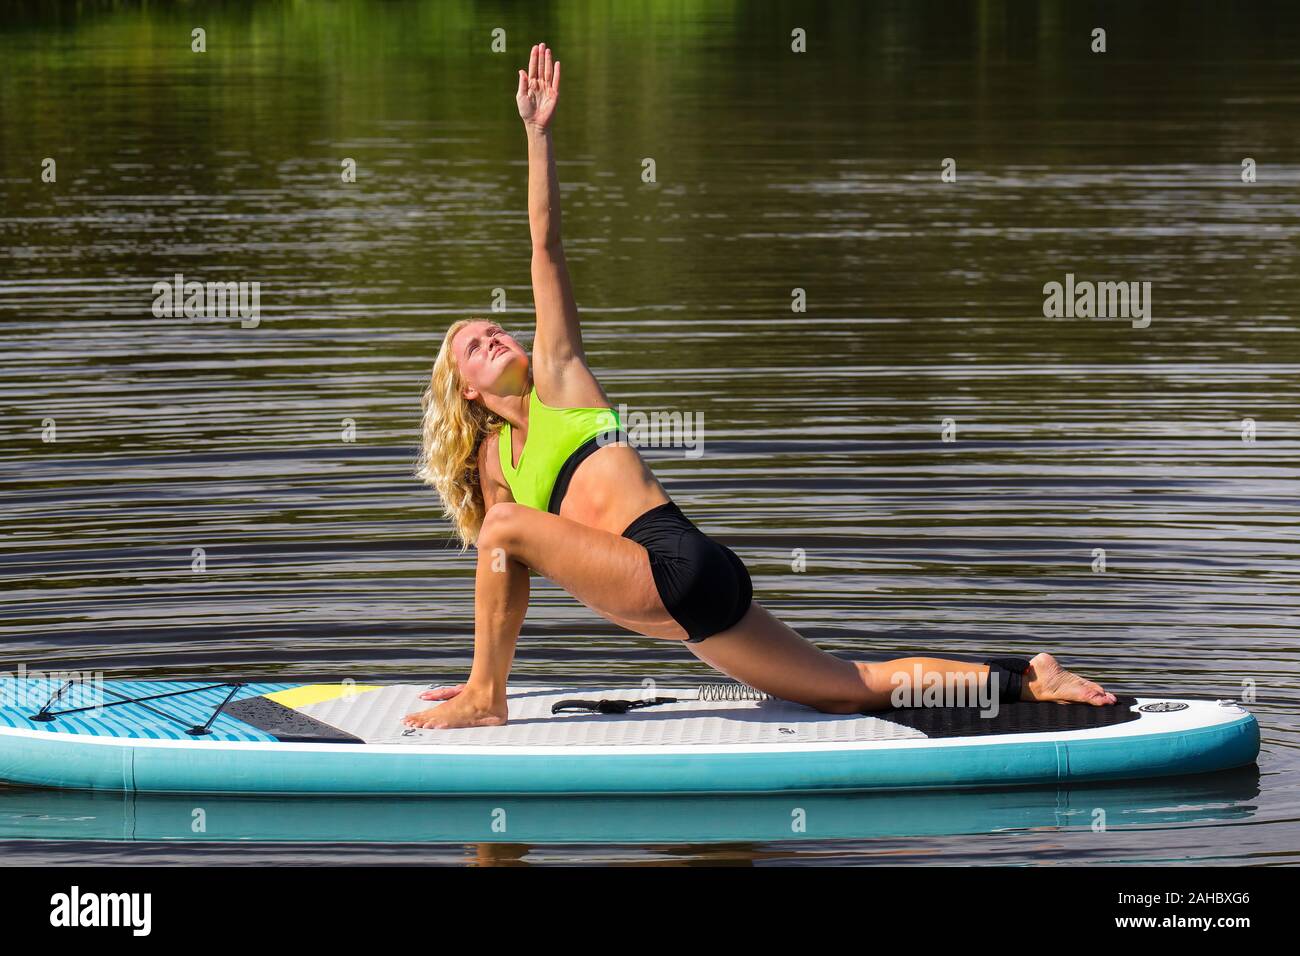 Jeune femme européenne dans le triangle posent sur la virgule flottante paddle board Banque D'Images